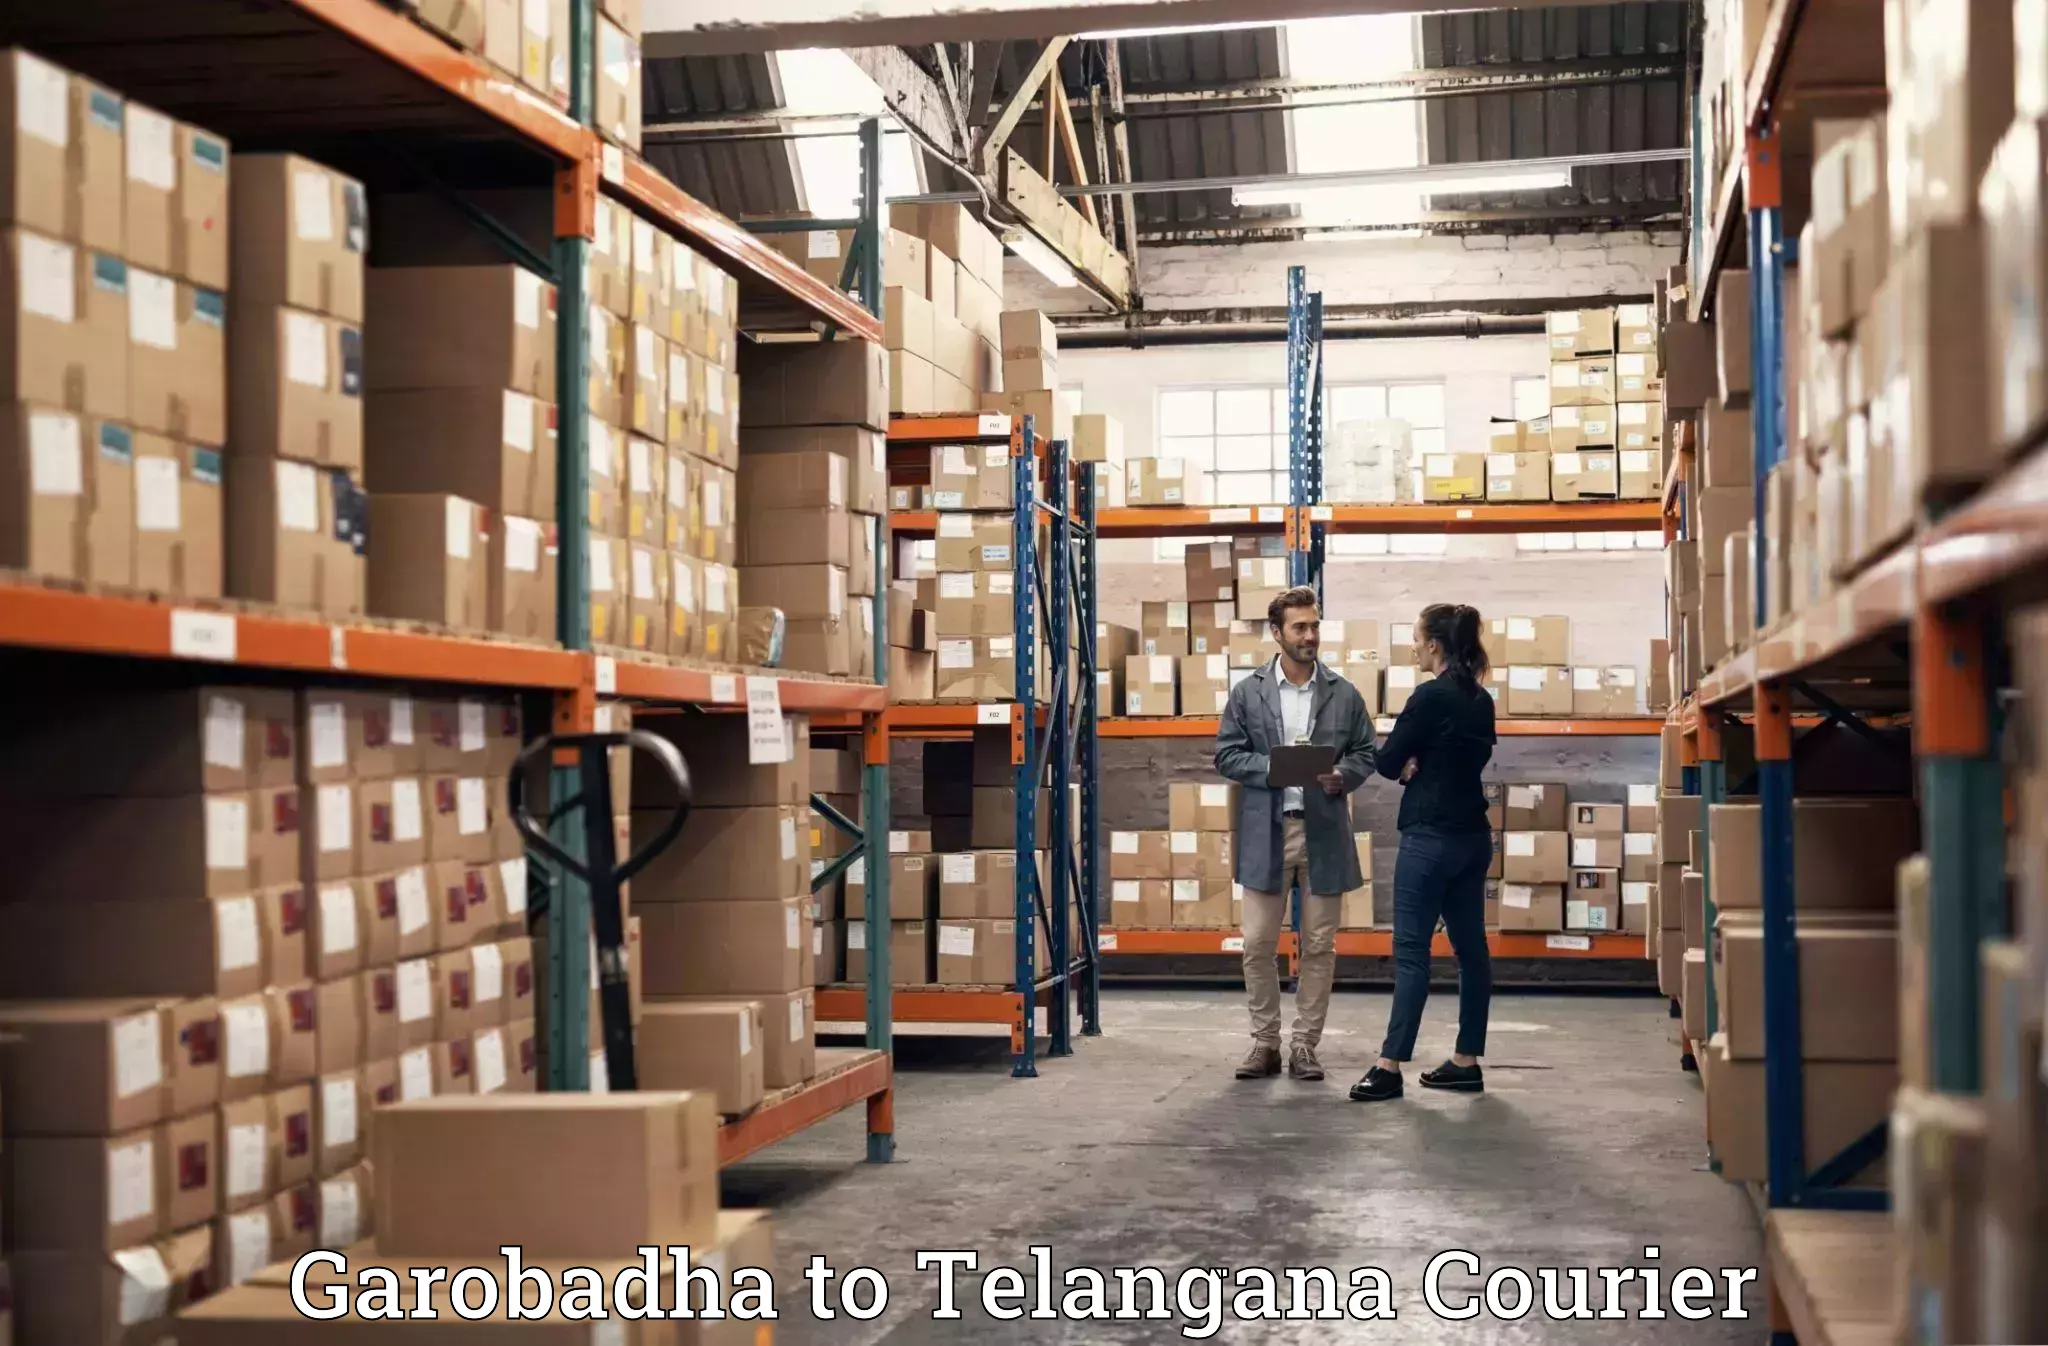 Professional movers Garobadha to Bhadrachalam